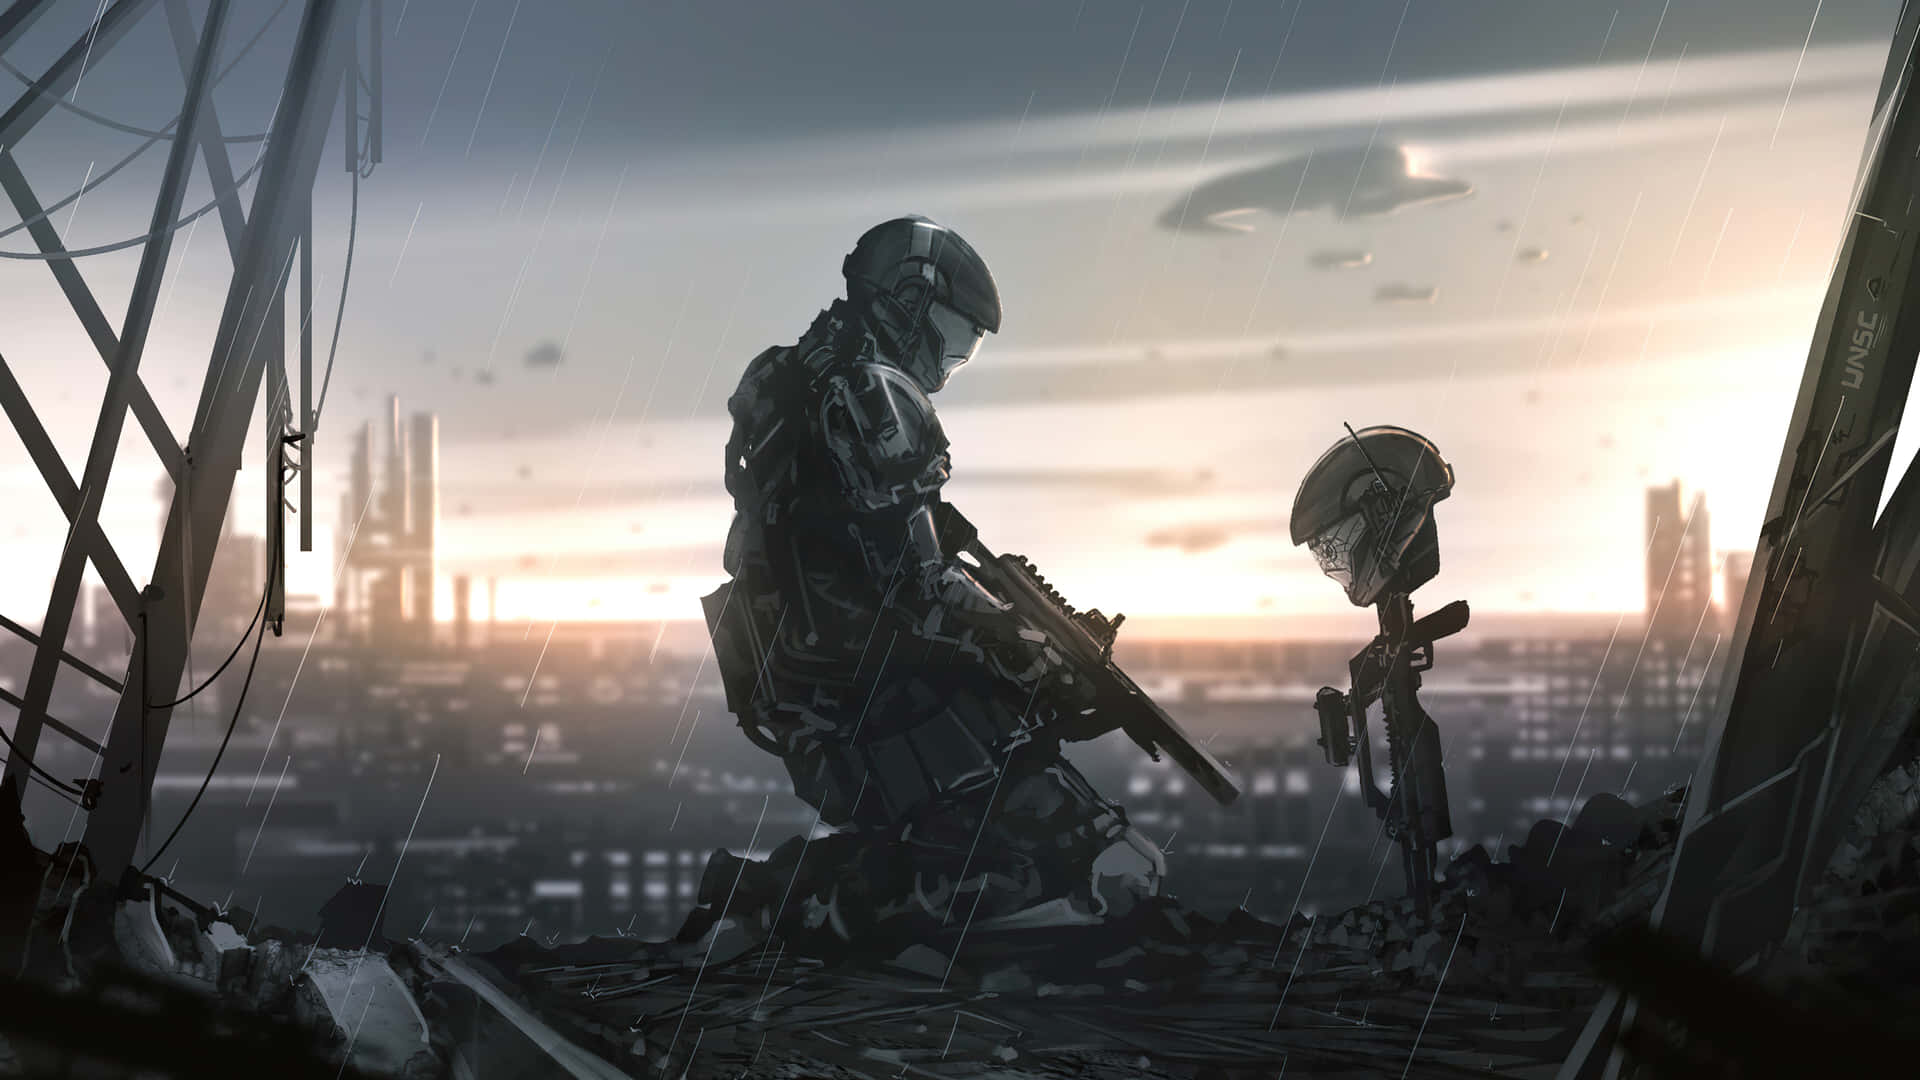 Cool Halo Kneeling On Battlefield Wallpaper